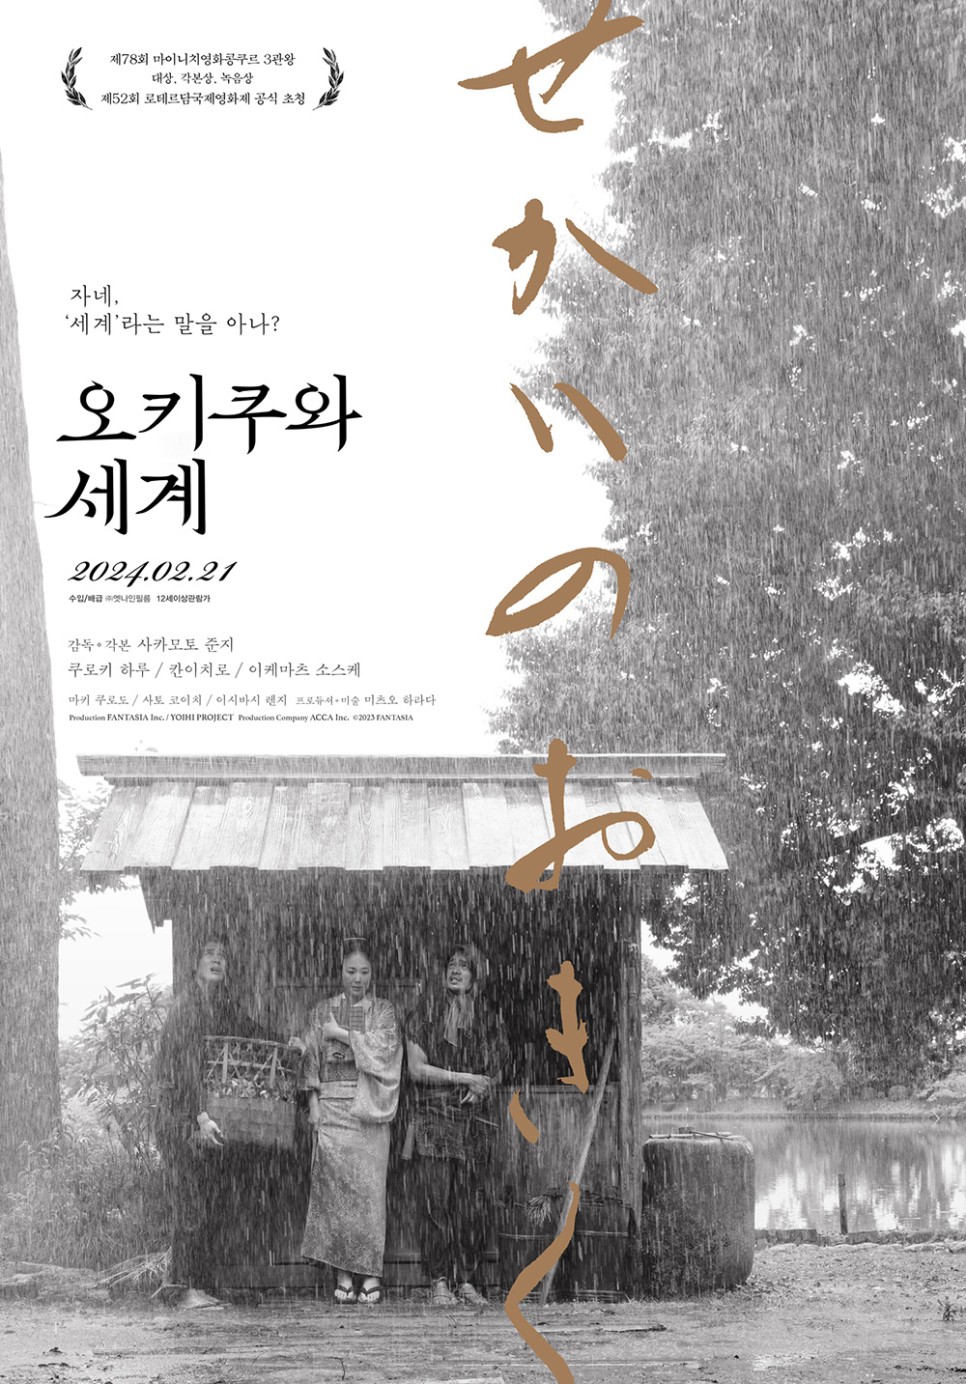 2월 3주차 국내 박스오피스: 한국 영화의 무덤, <파묘>가 이장해 줄까